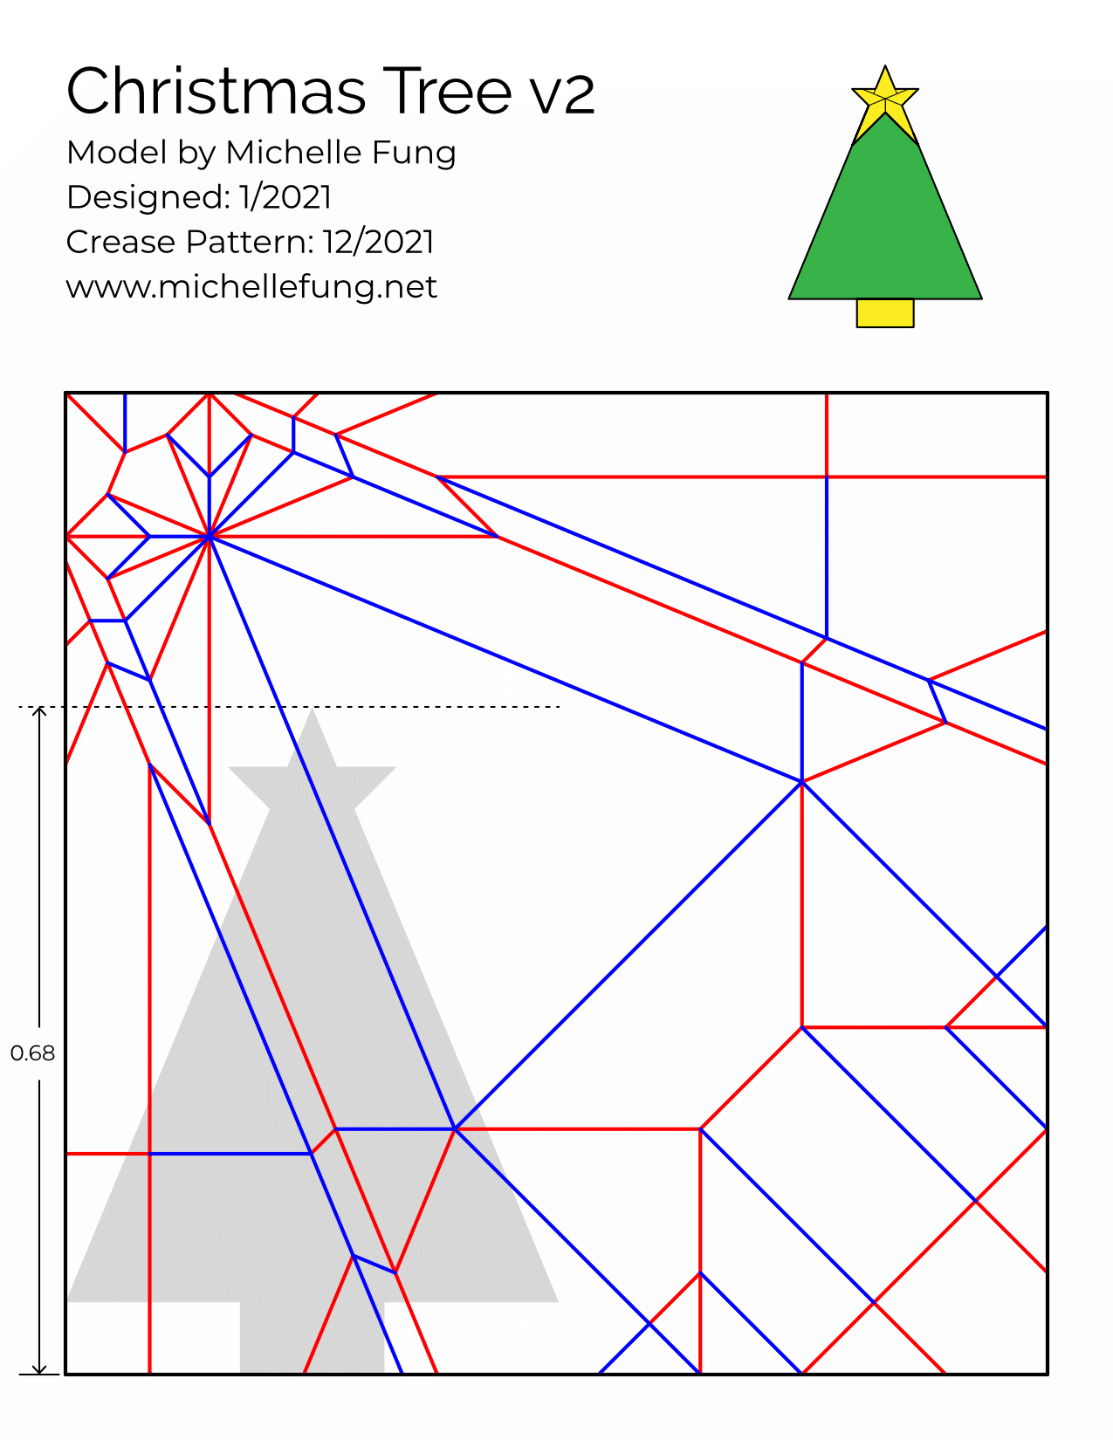 Img 7 - Christmas Tree v2